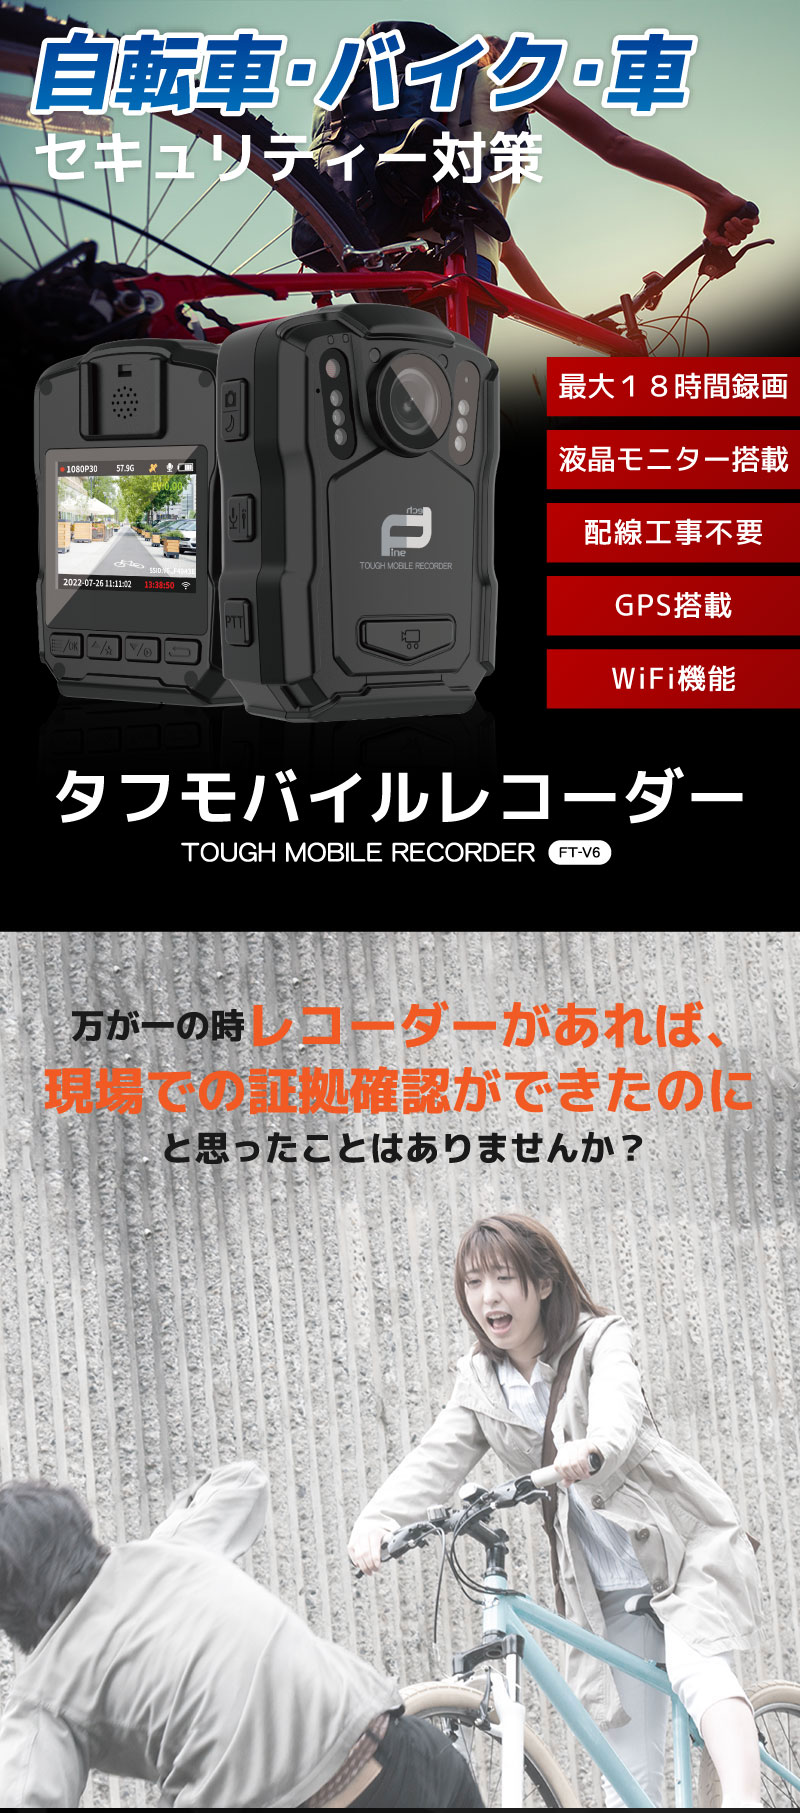 モバイルレコーダー FT-V6【64GB】1